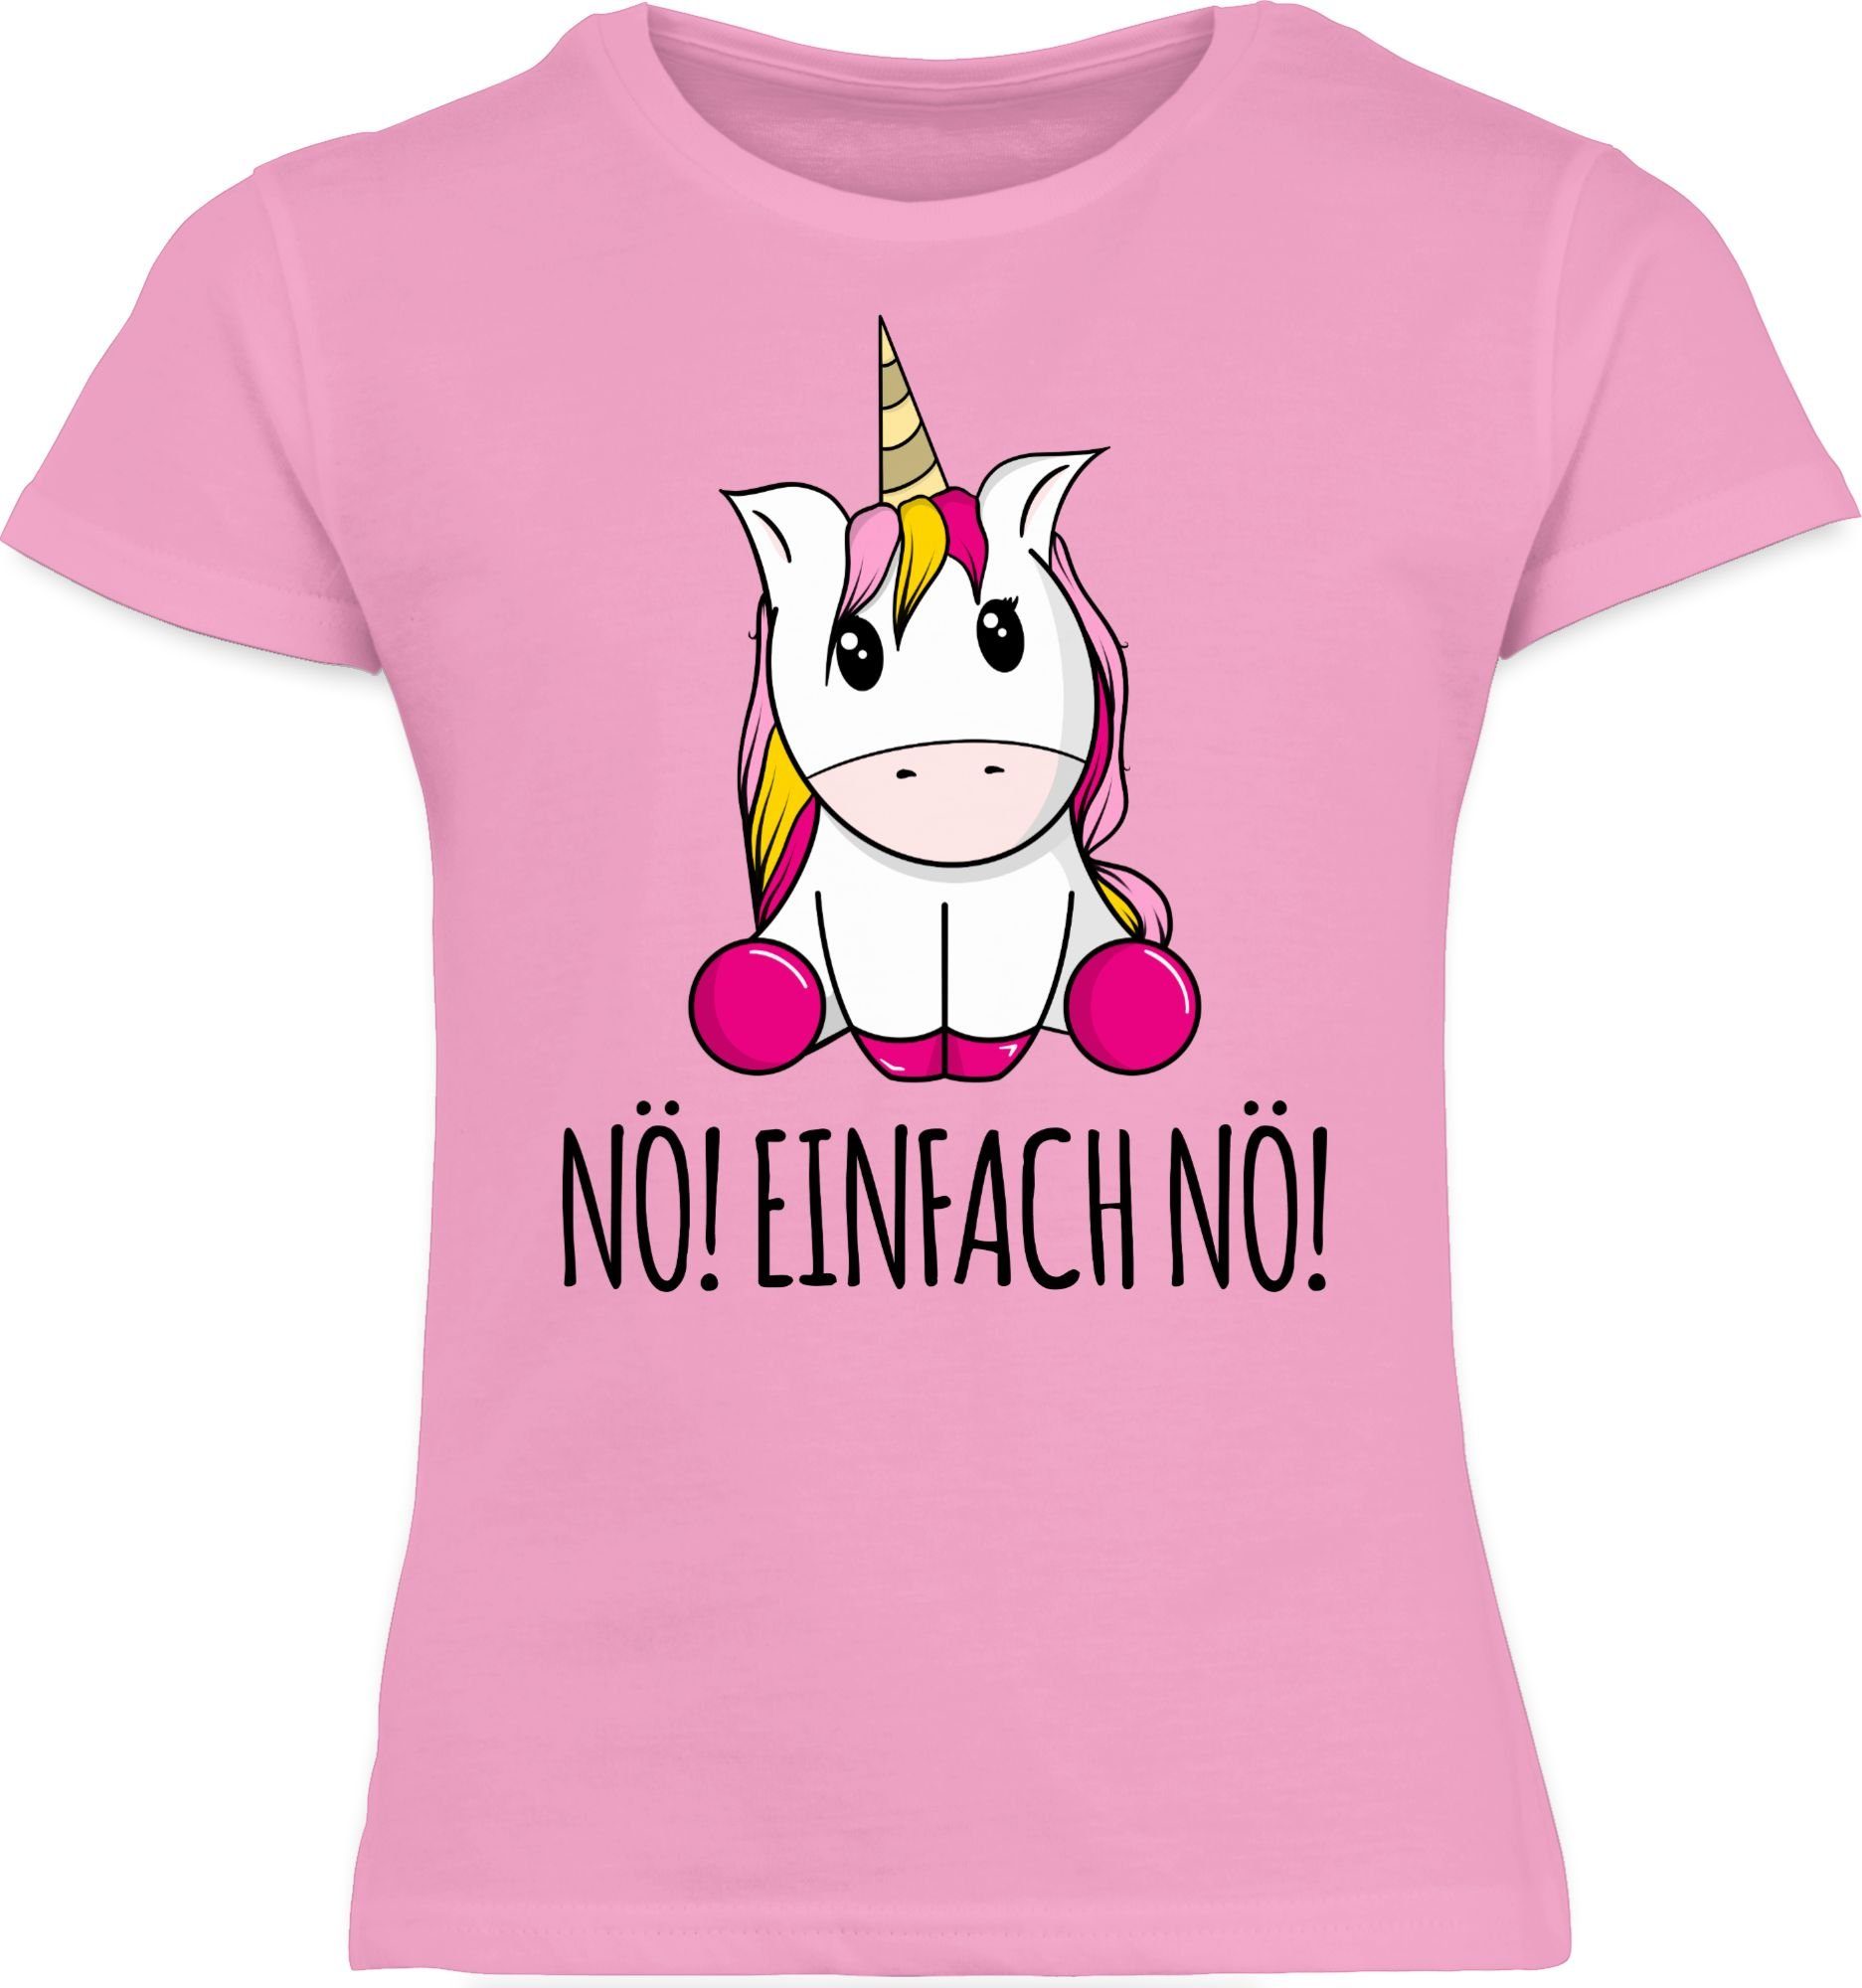 Rosa Statement Nein Nö! Lustig fragst Kinder Bevor Unicorn Sprüche Du 1 Einhorn Nö! Einfach Shirtracer T-Shirt